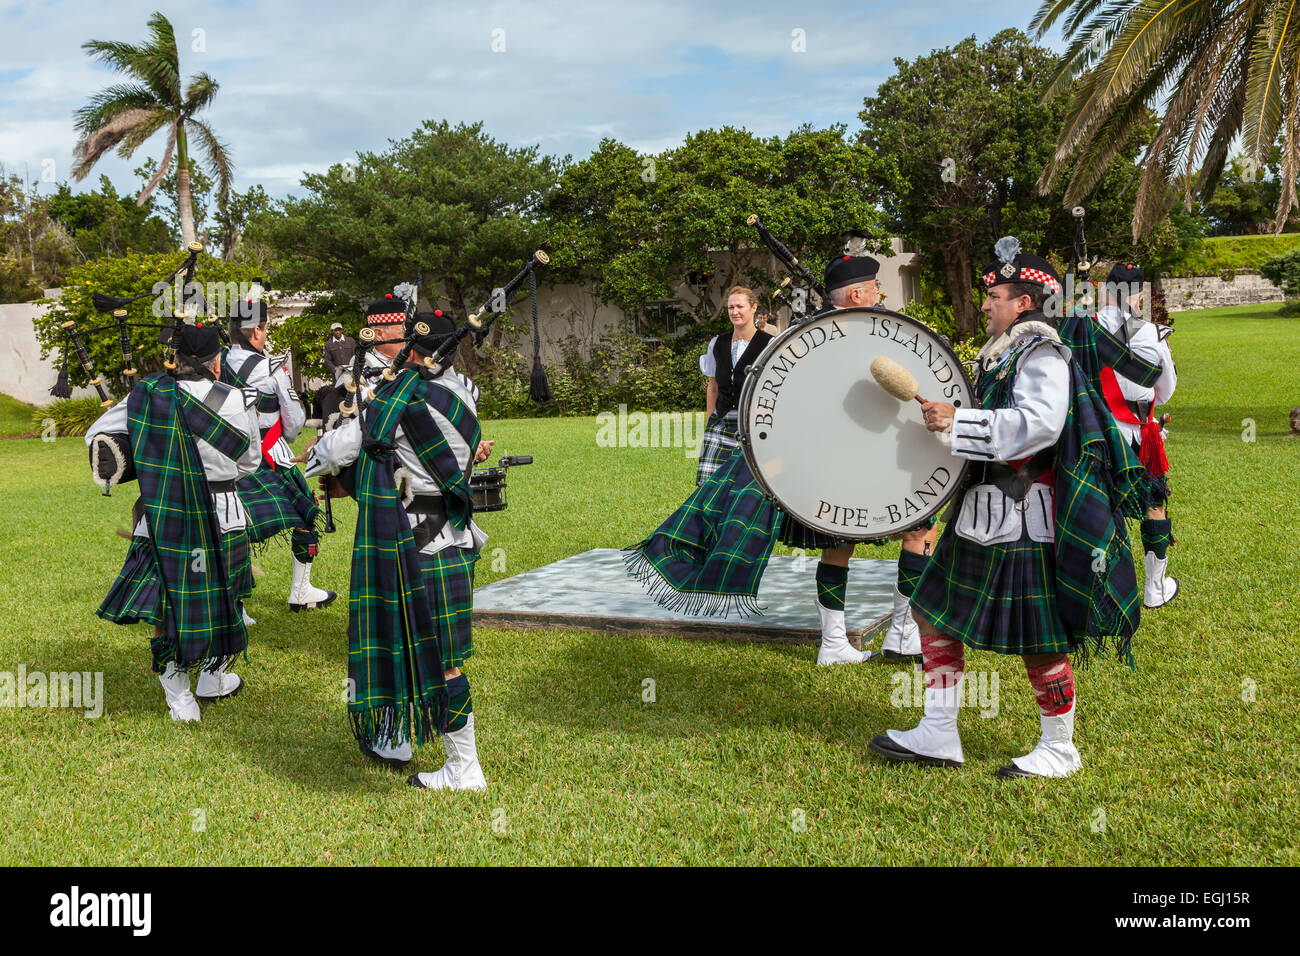 Kilted miembros de las islas Bermudas pipe band así como una bailarina de highland en Fort Hamilton en Hamilton, bermuda. Foto de stock